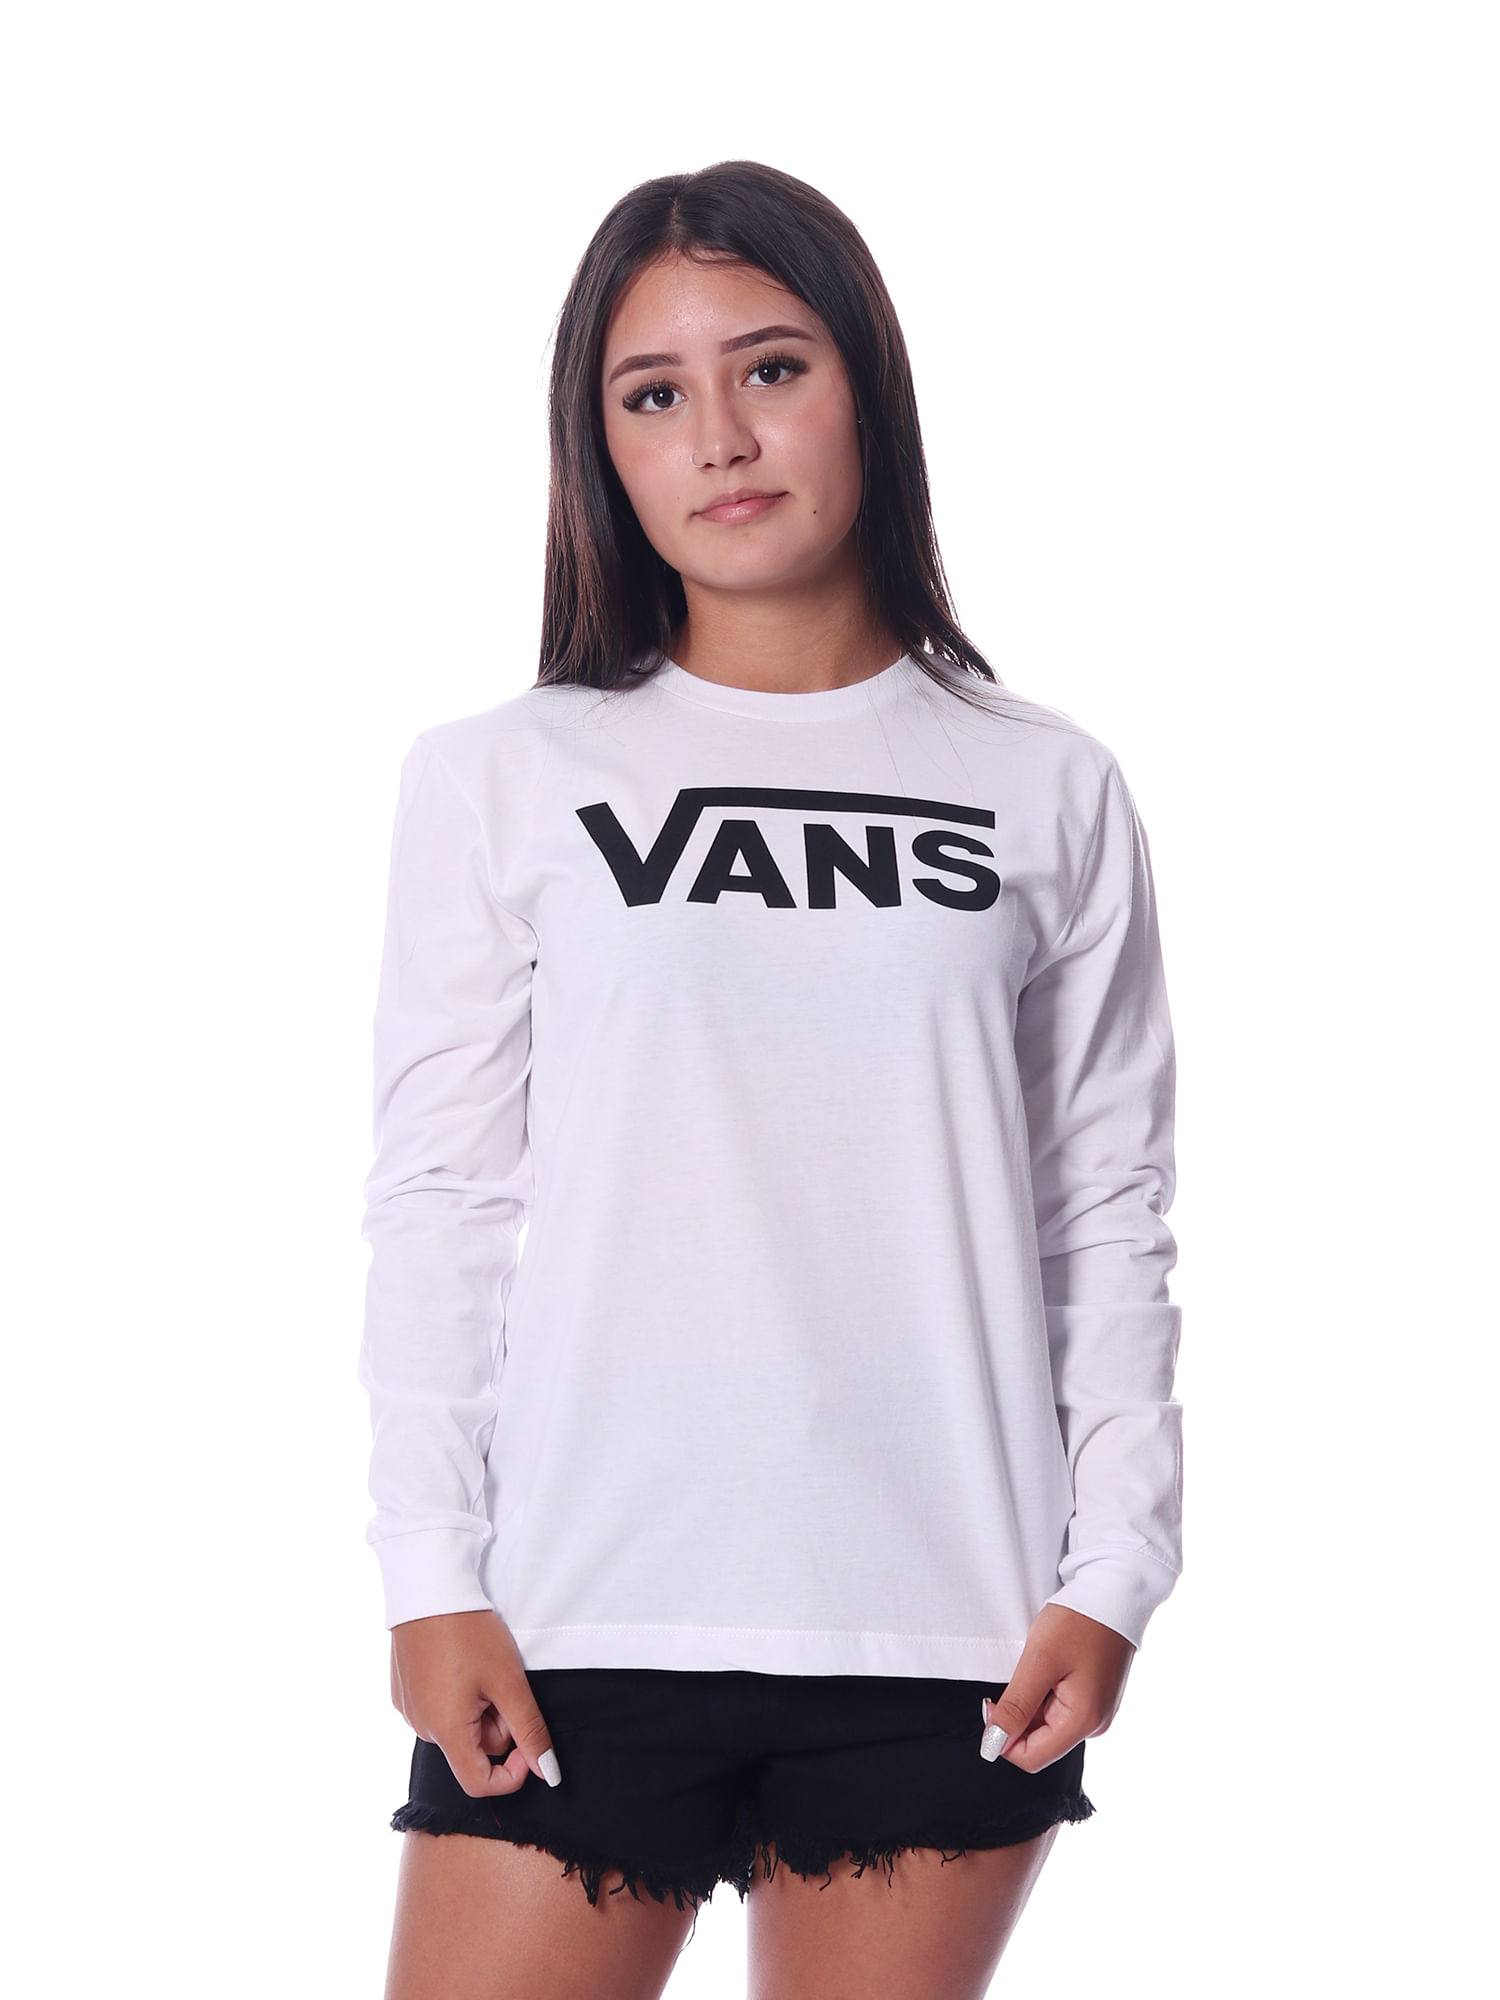 Camiseta-Vans-Flying-V-Classic-V4702700650002_1